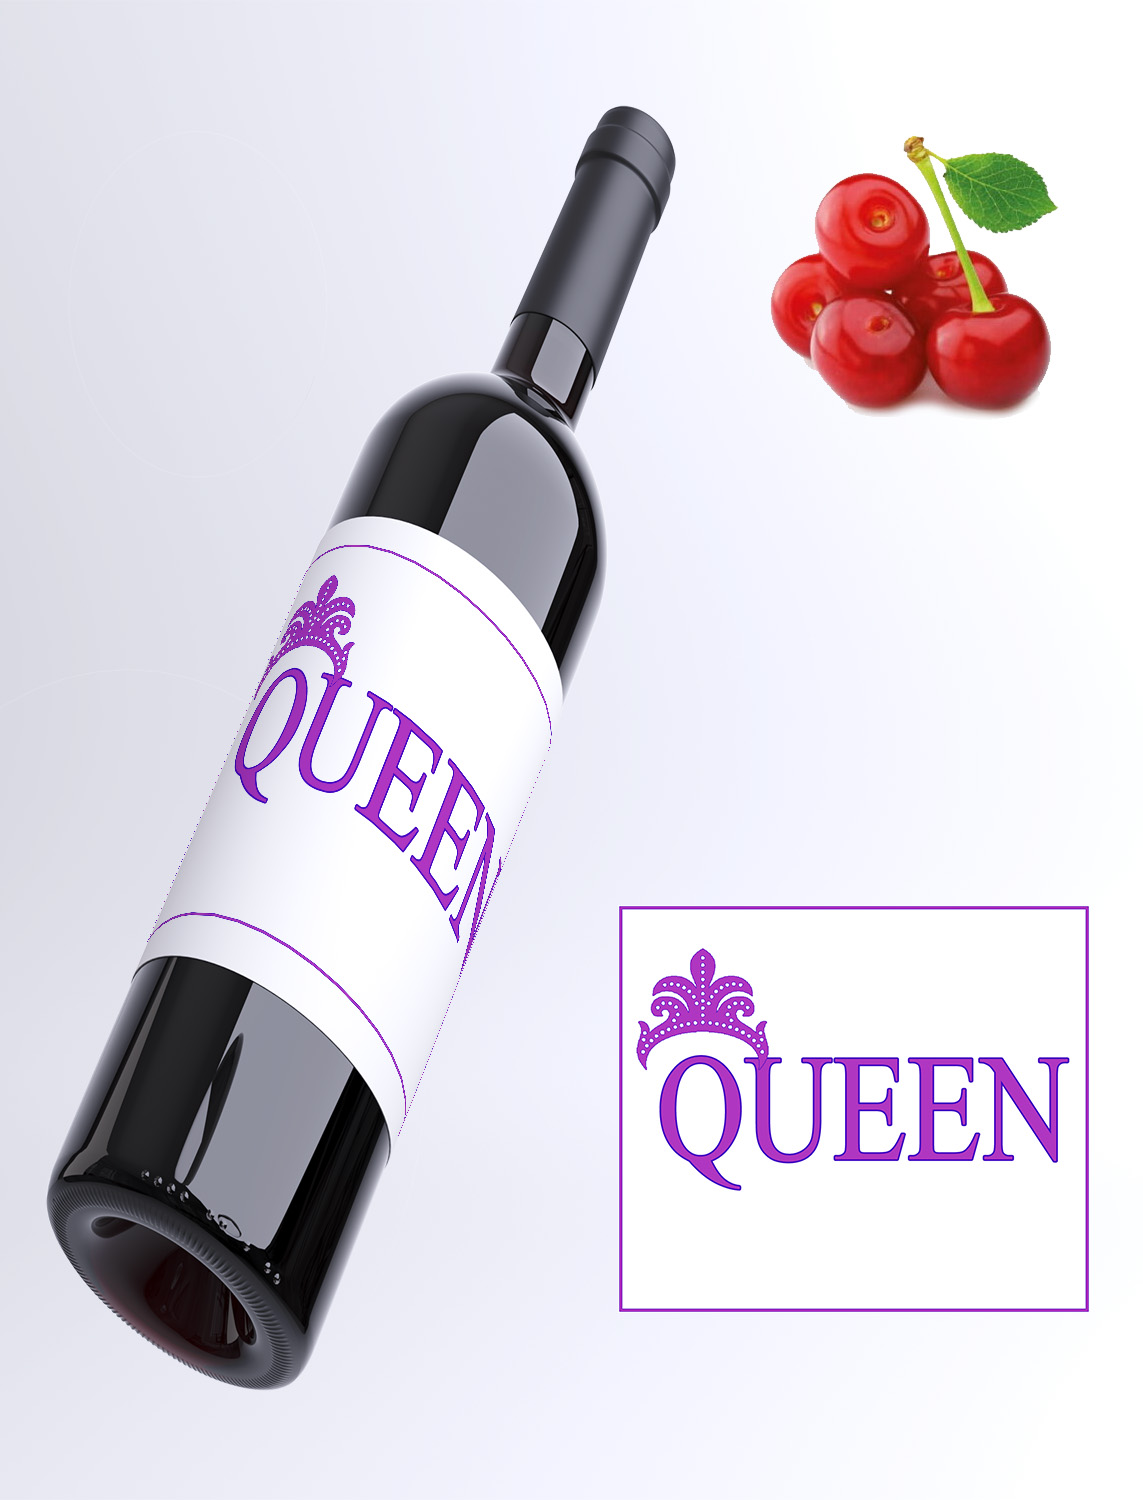 Queen - Višňové víno 